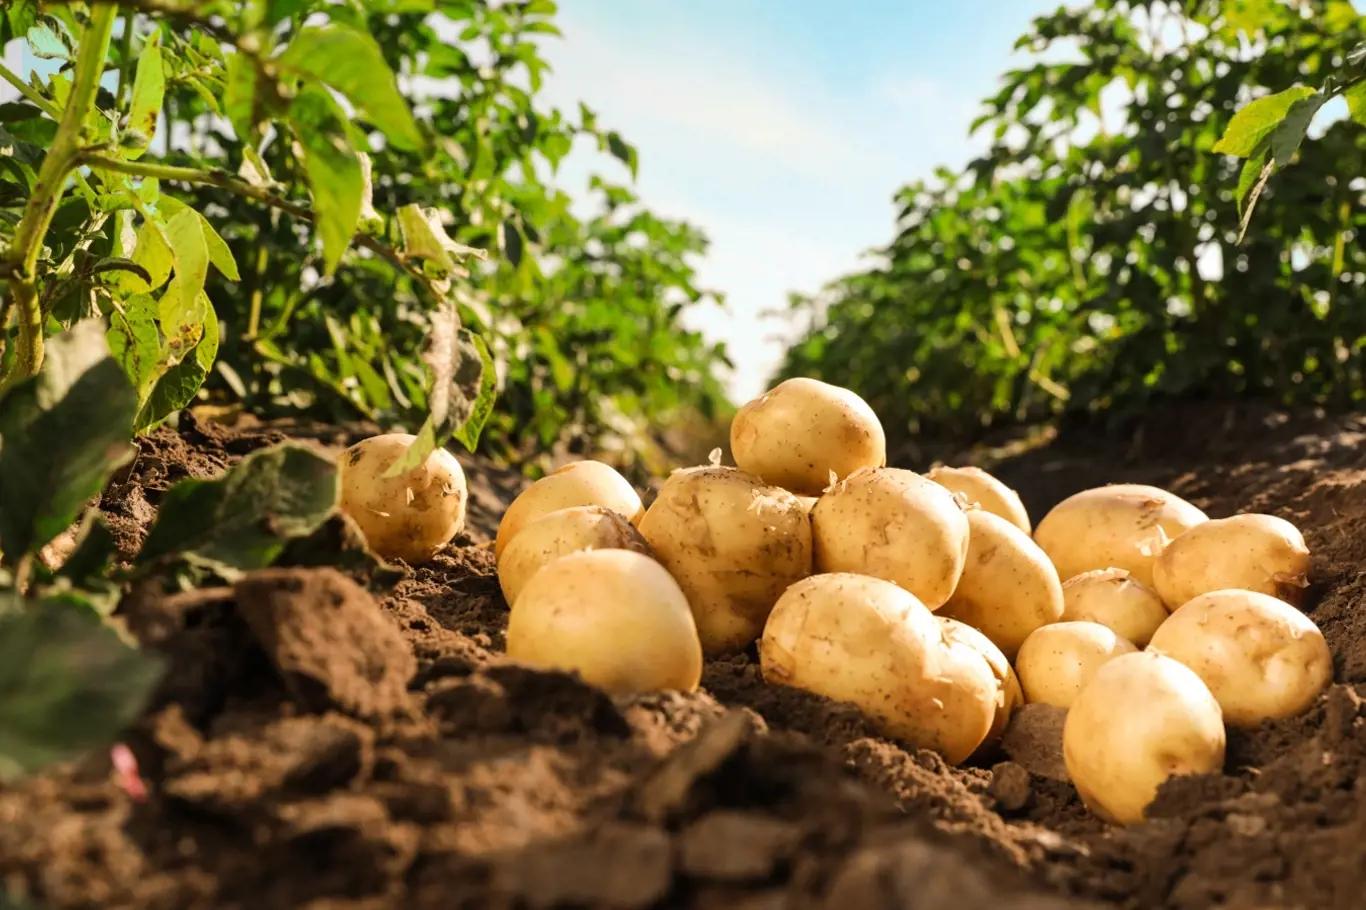 Jestliže si chcete vypěstovat vlastní brambory, je třeba začít správnou výsadbou, na kterou je čas právě teď.